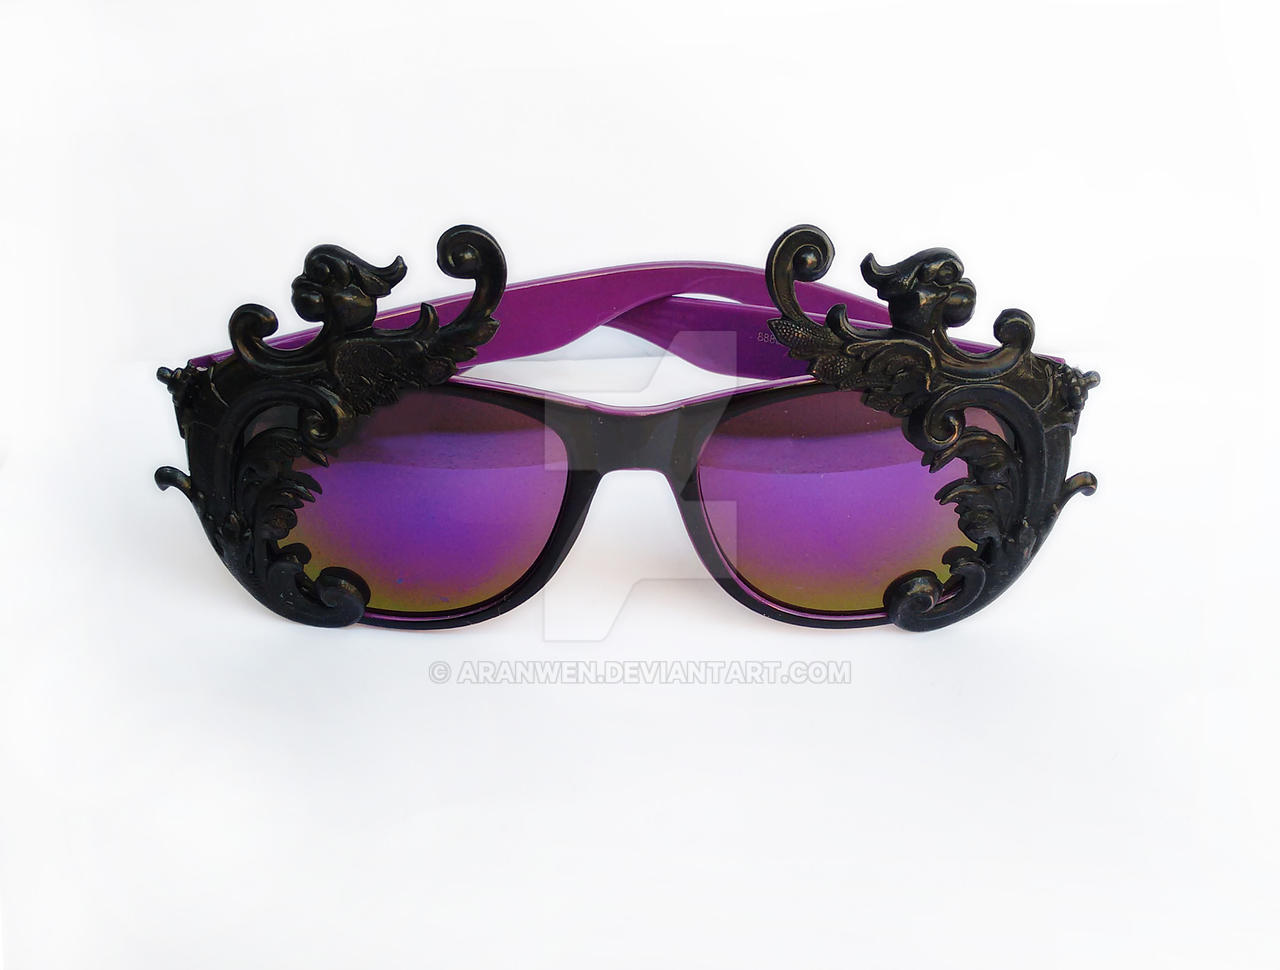 Gothic sunglasses